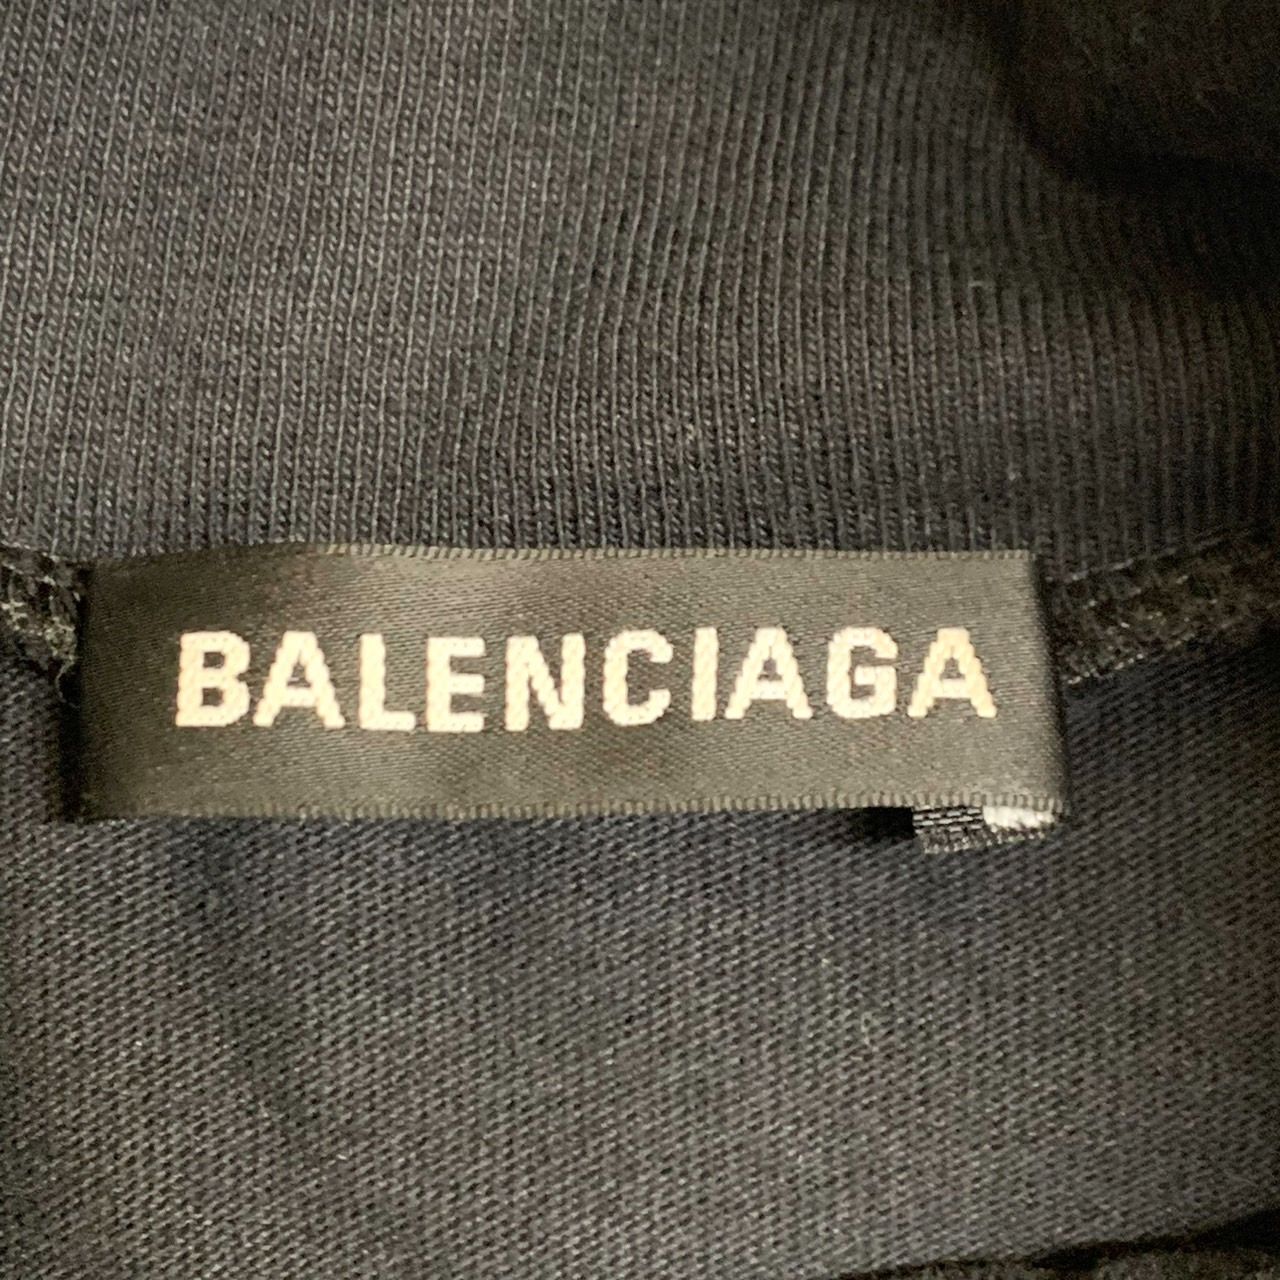 【BALENCIAGA】バレンシアガ/マルチロゴタートルネックTシャツ/S/ブラック/2019AW/594582 TGV79